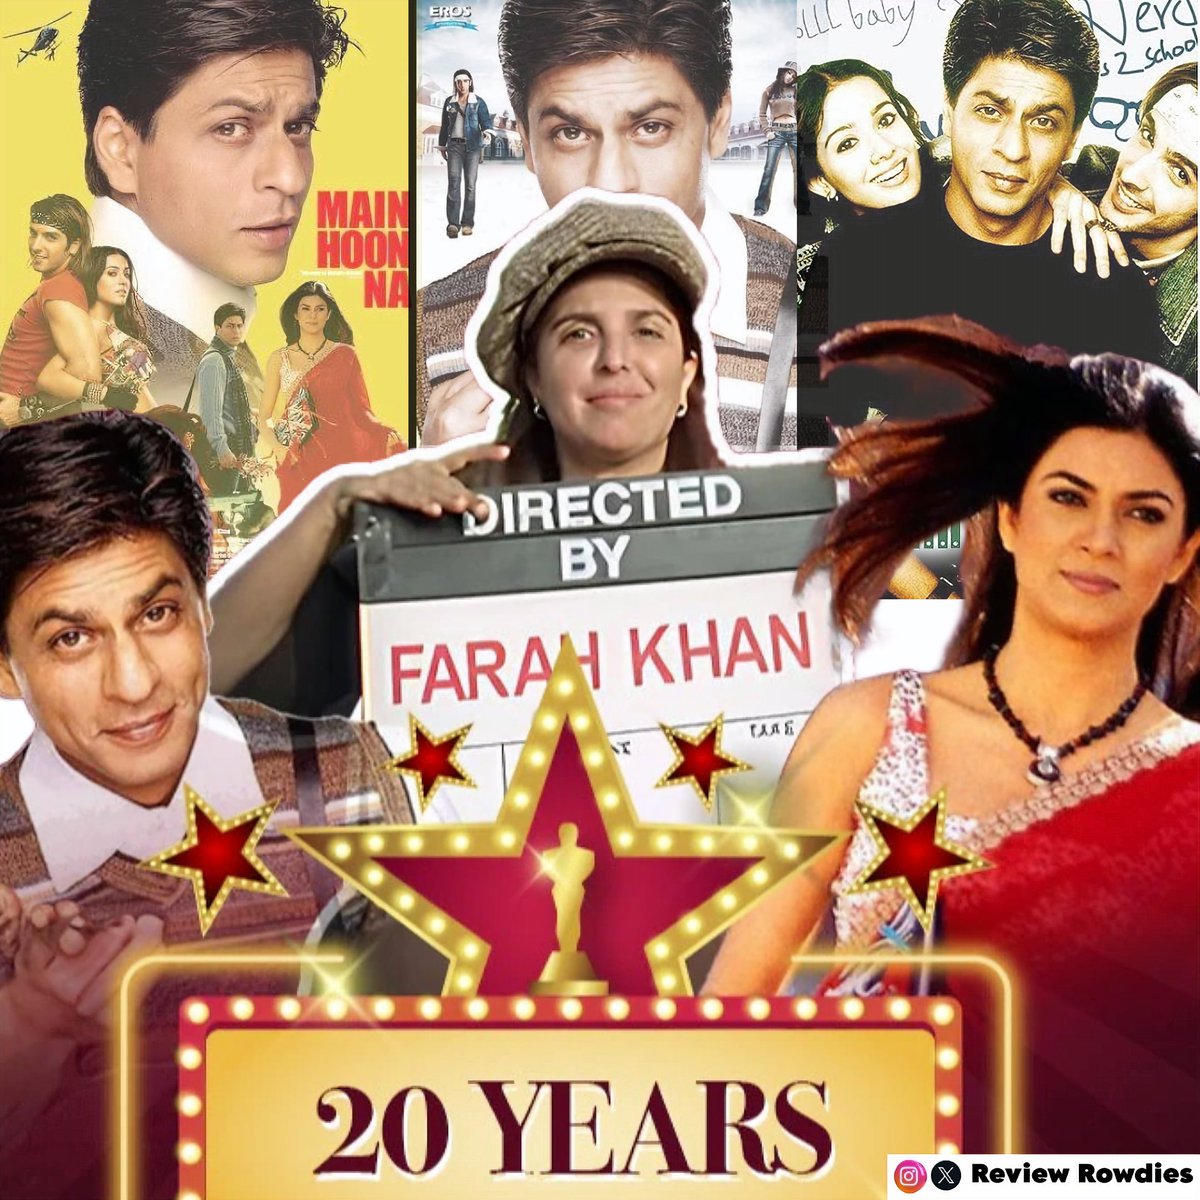 20 years of Main Hoon Na! Shah Rukh Khan and Farah Khan's amazing entertainer 

#20YearsOfMainHoonNa #MainHoonNa #ShahRukhKhan #FarahKhan #SushmitaSen #ZayedKhan #AmritaRao #SunielShetty #Reviewrowdies